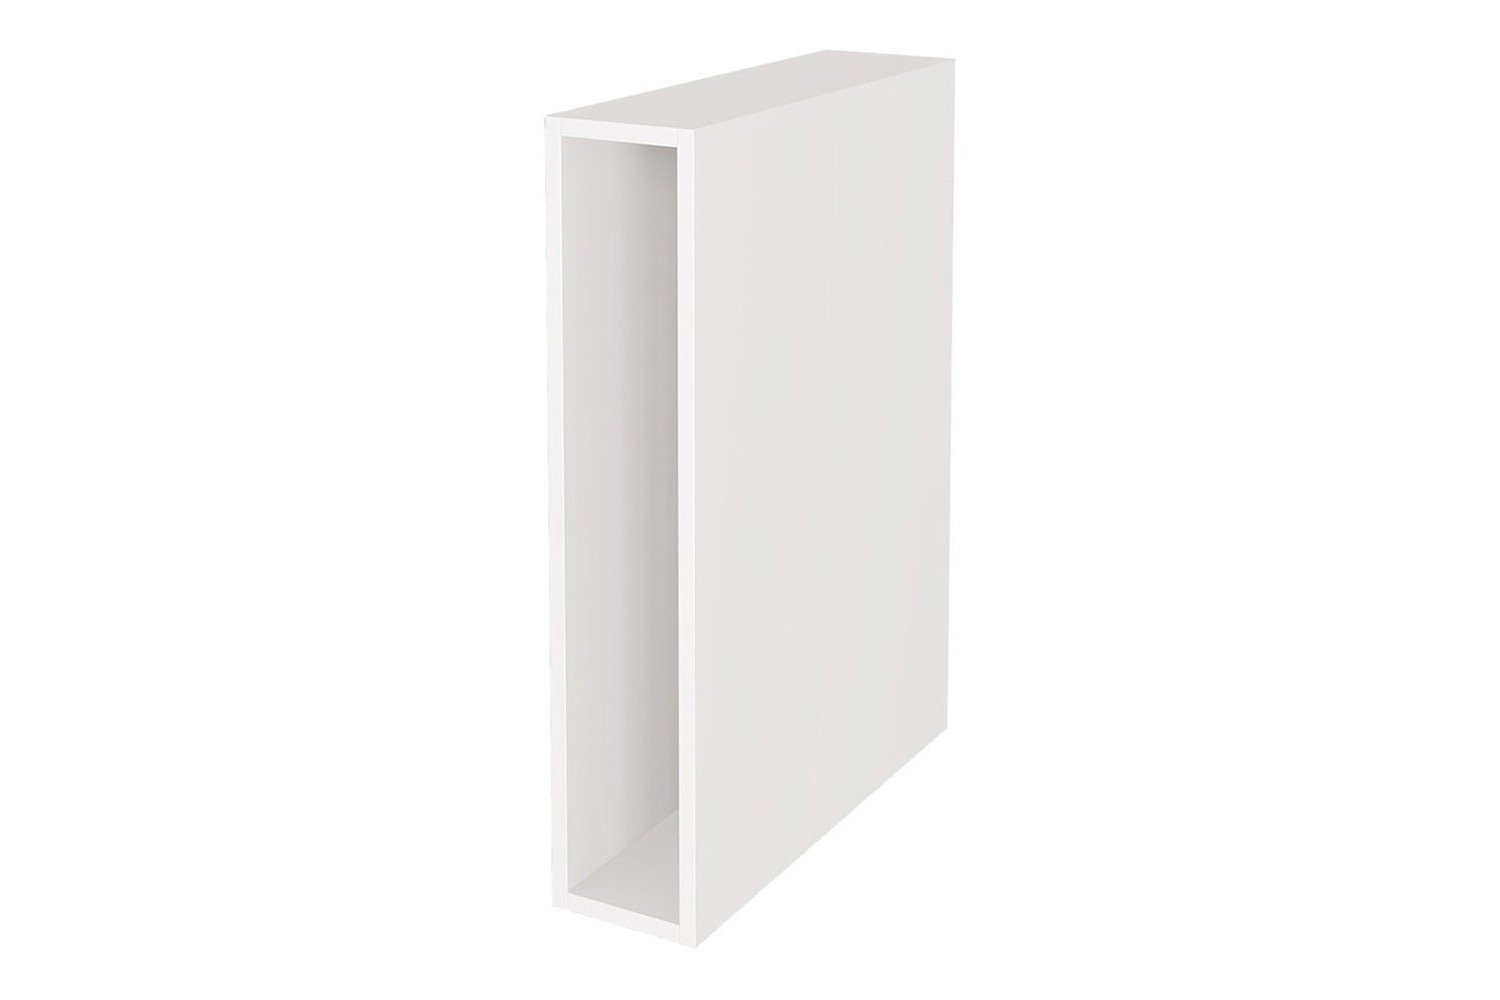 Каркас напольного шкафа белый 40x60x80 см